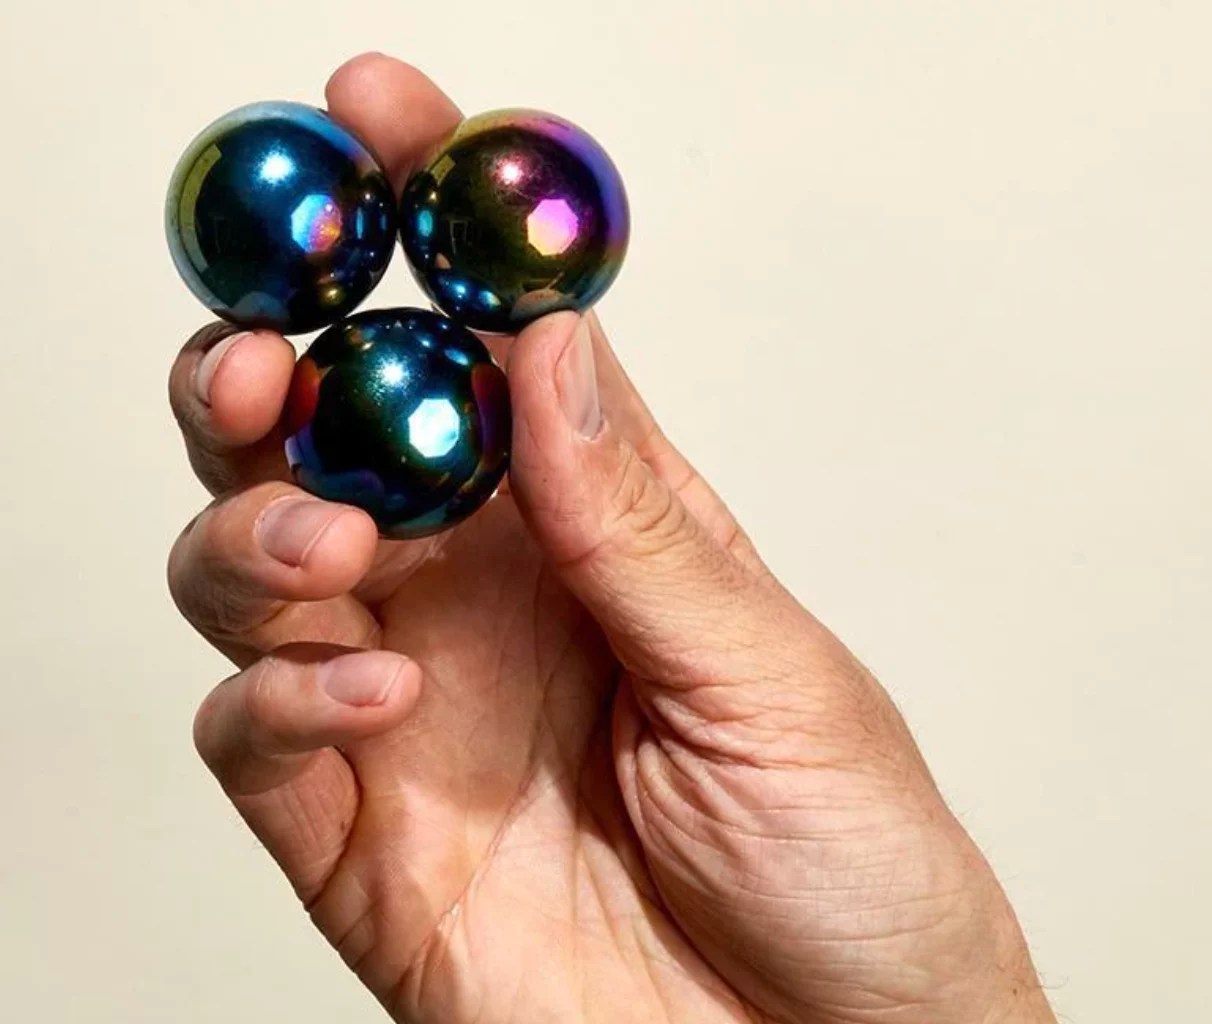 Speks Supers 33mm Magnet Balls